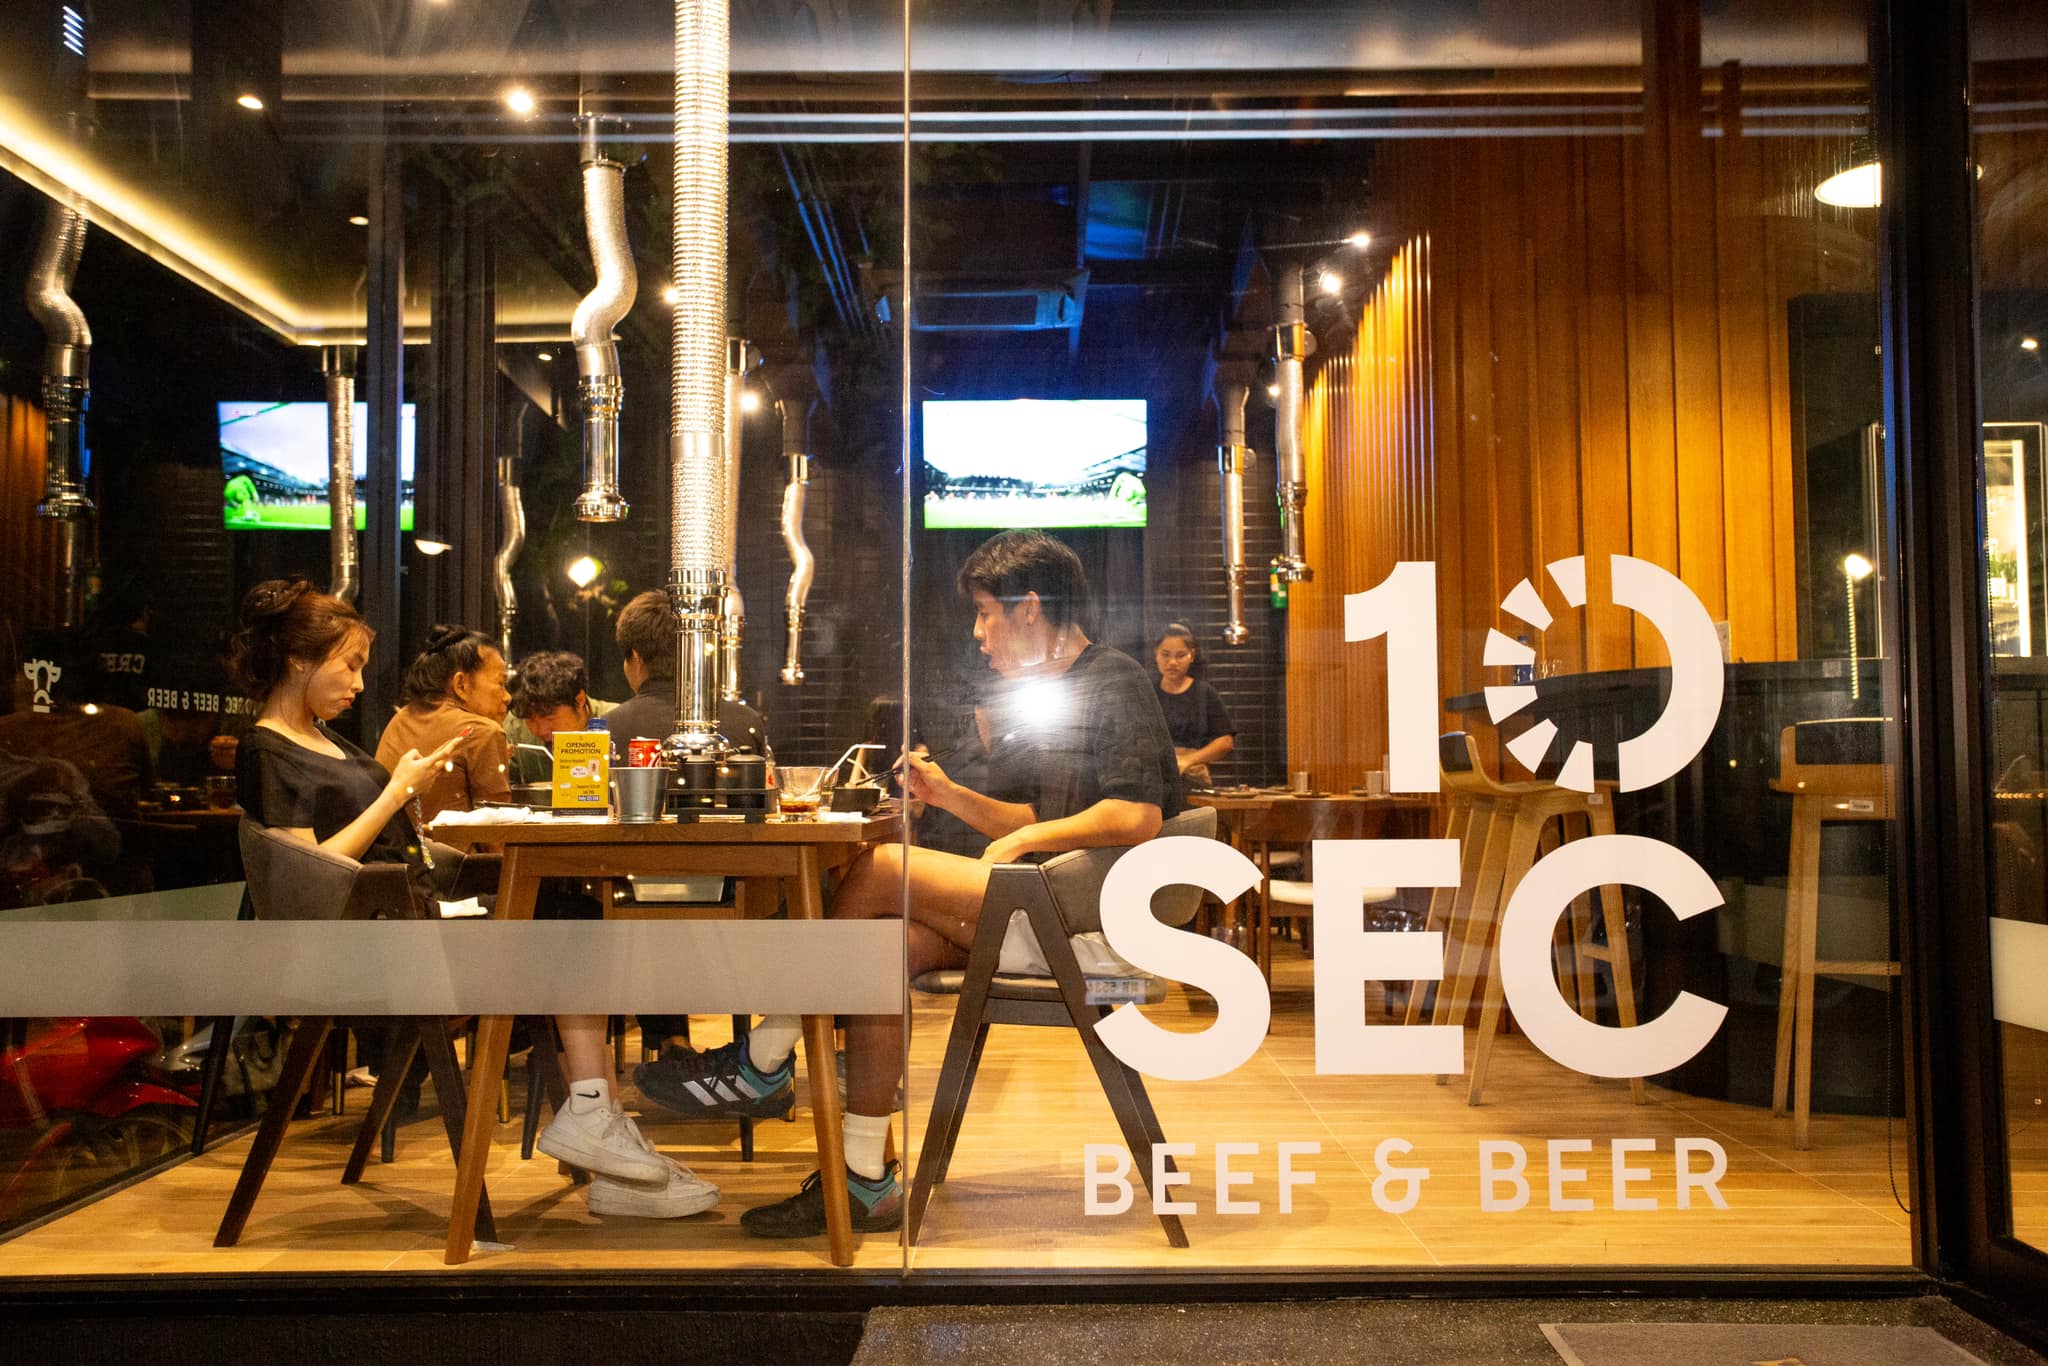 10 Sec Beef & Beer (10 Sec Beef & Beer) : นนทบุรี (Nonthaburi)